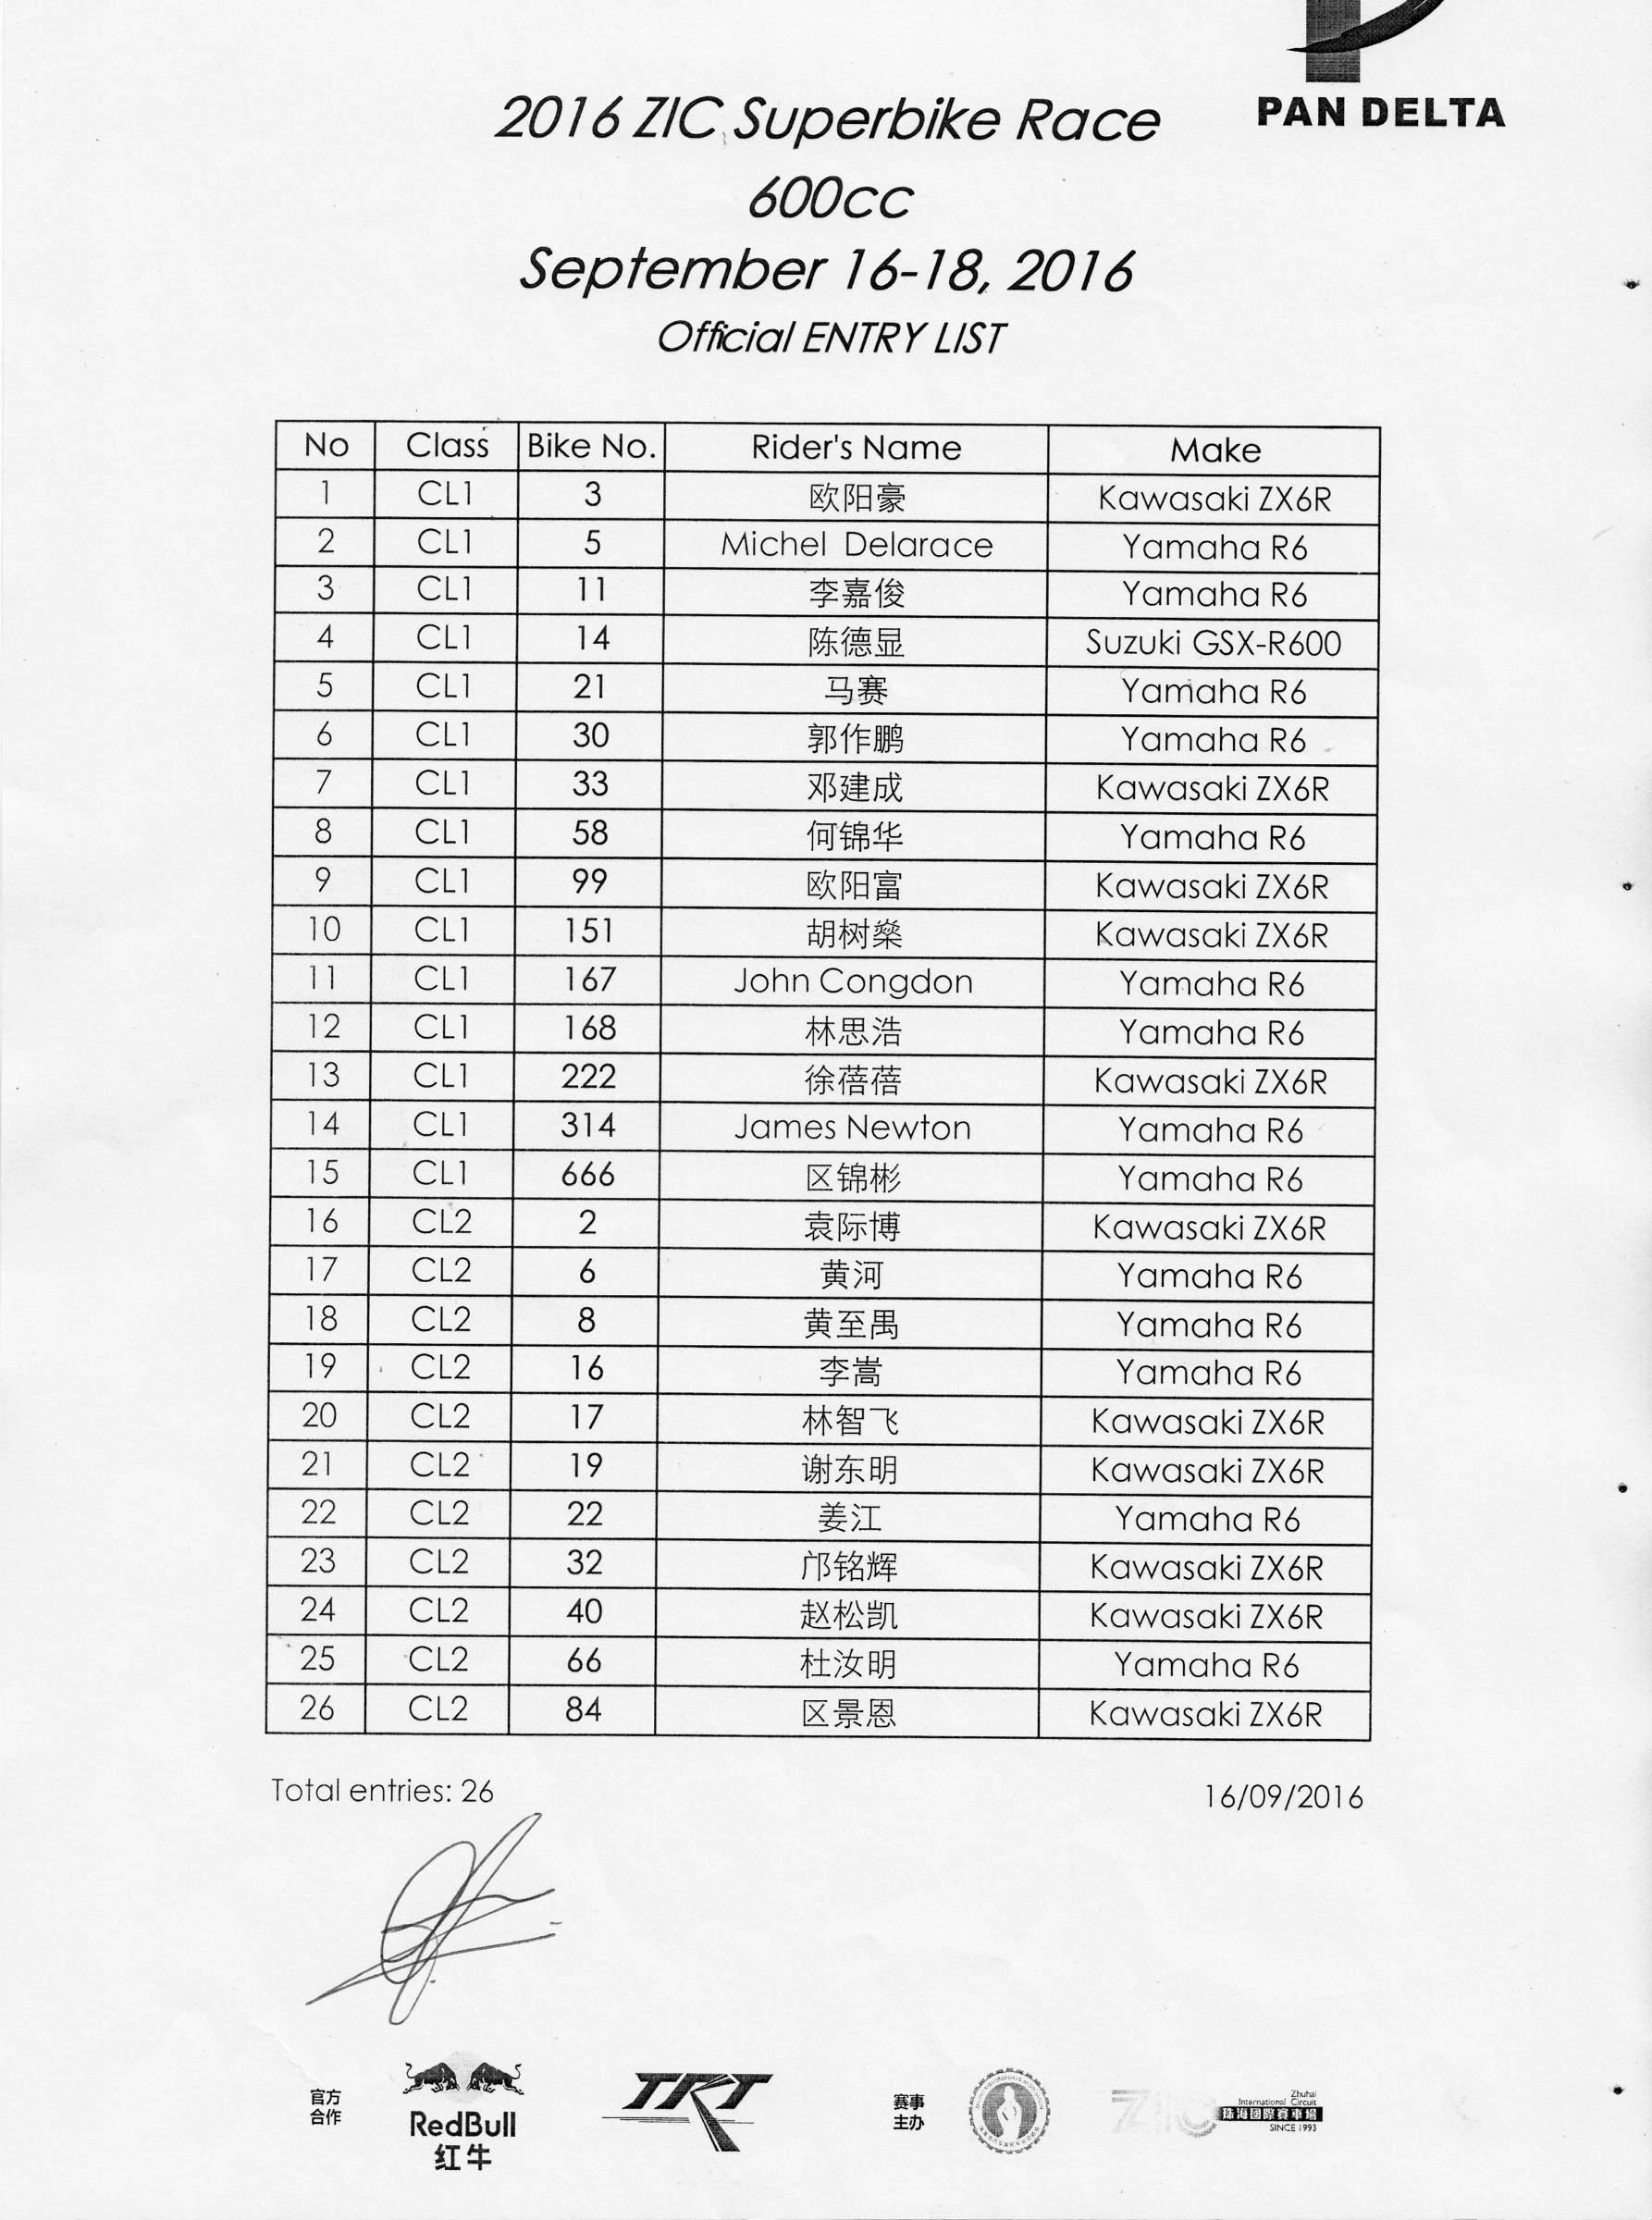 2016年泛珠秋季赛ZIC超级摩托车600cc 官方参赛名单